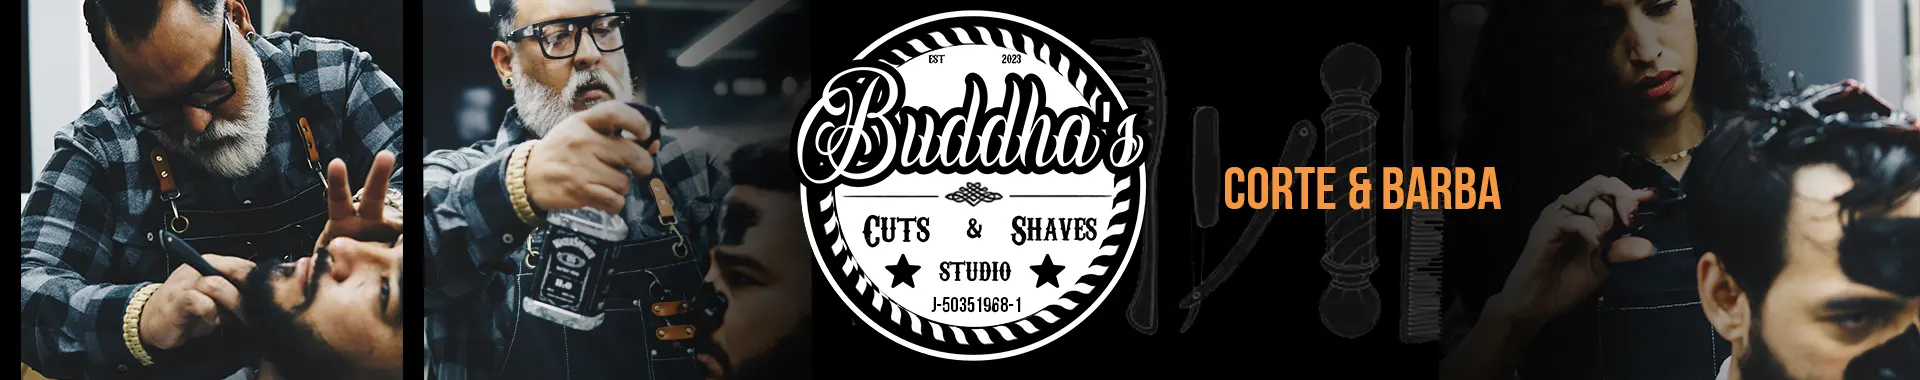 Imagen 2 del perfil de Buddha's Cuts And Shaves